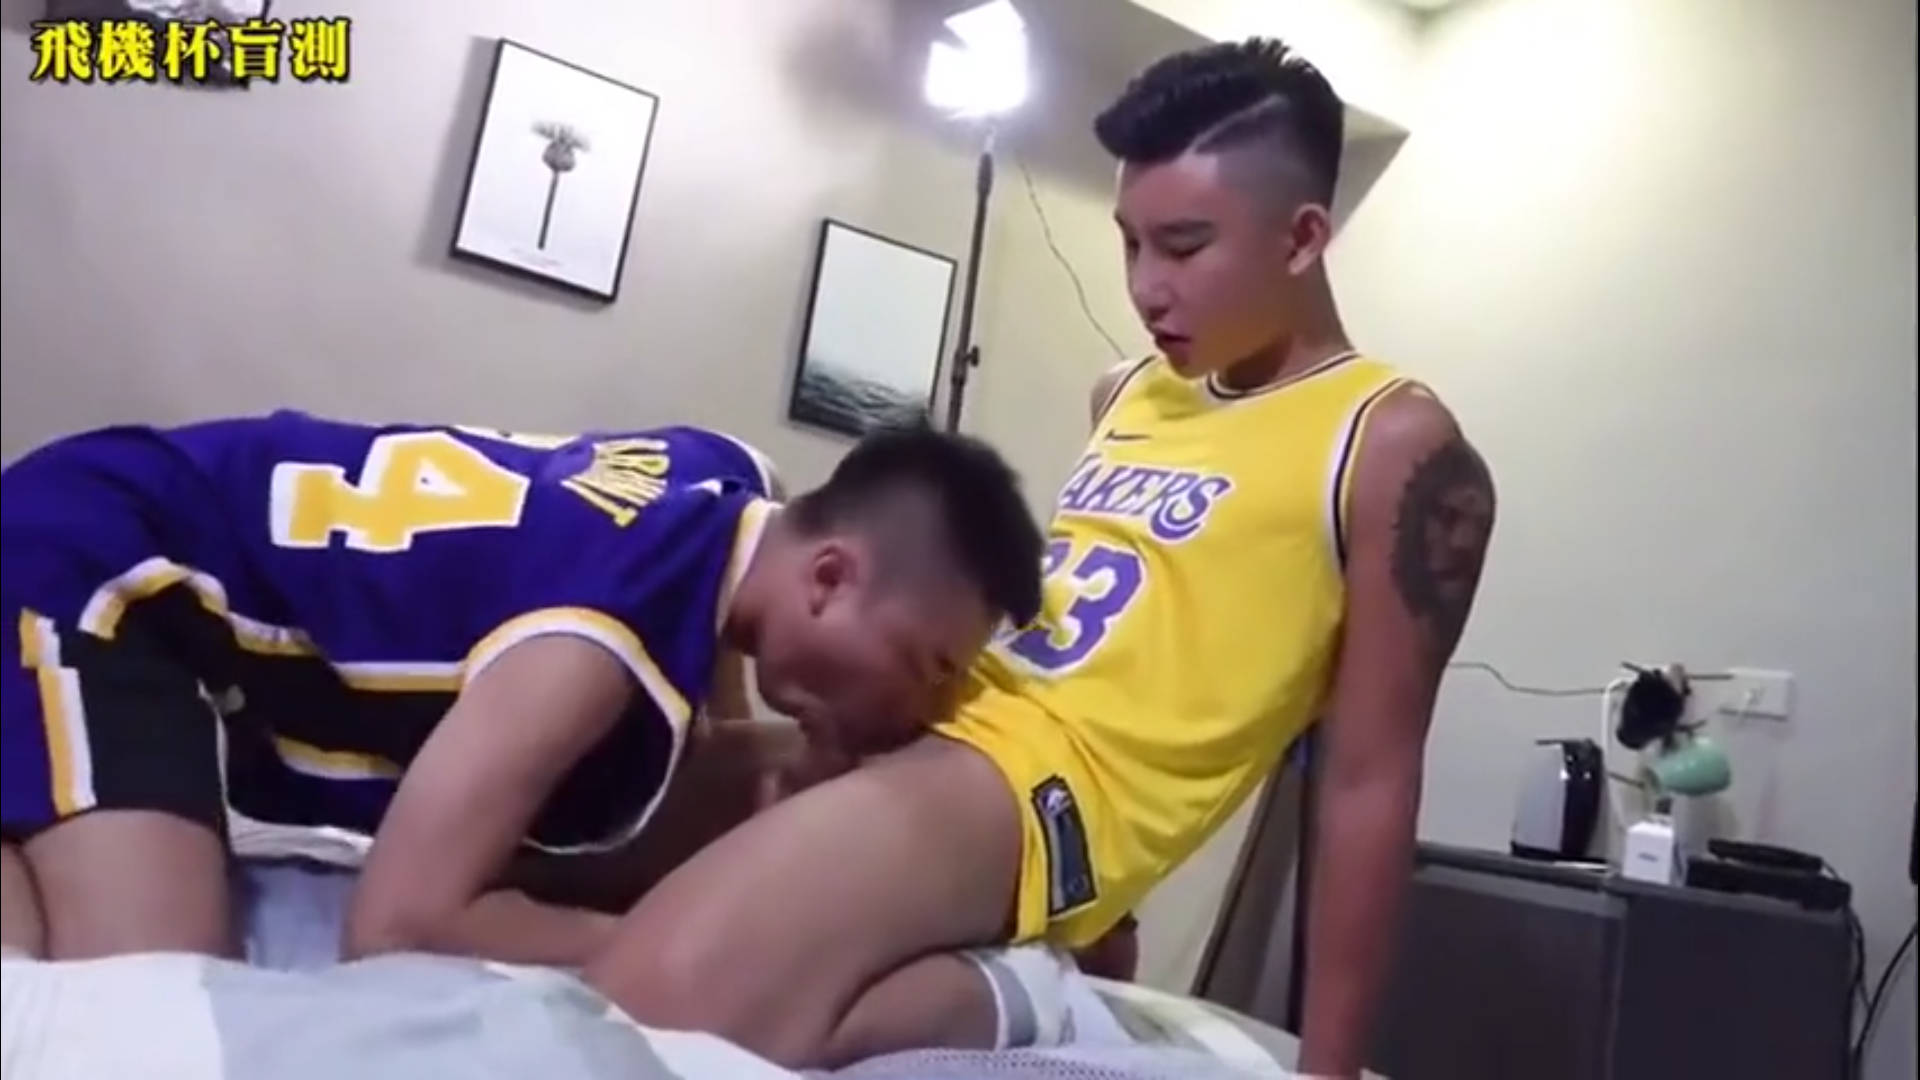 video gay coquin 016 baise acrobatique entre asiatiques coquins - Une baise hard entre nippons